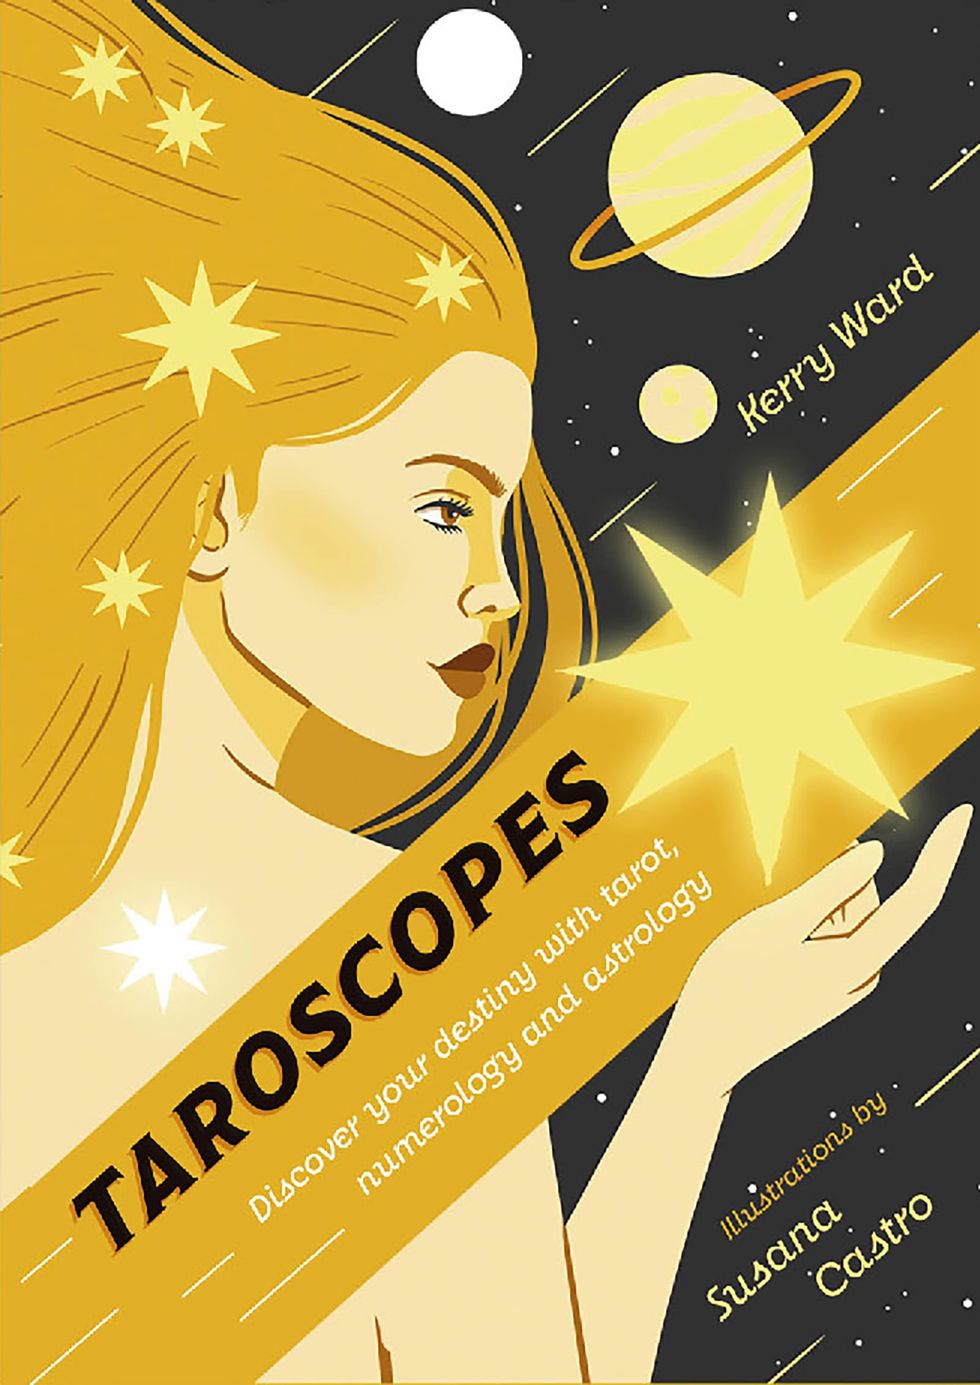 Taroscopes by Kerry Ward